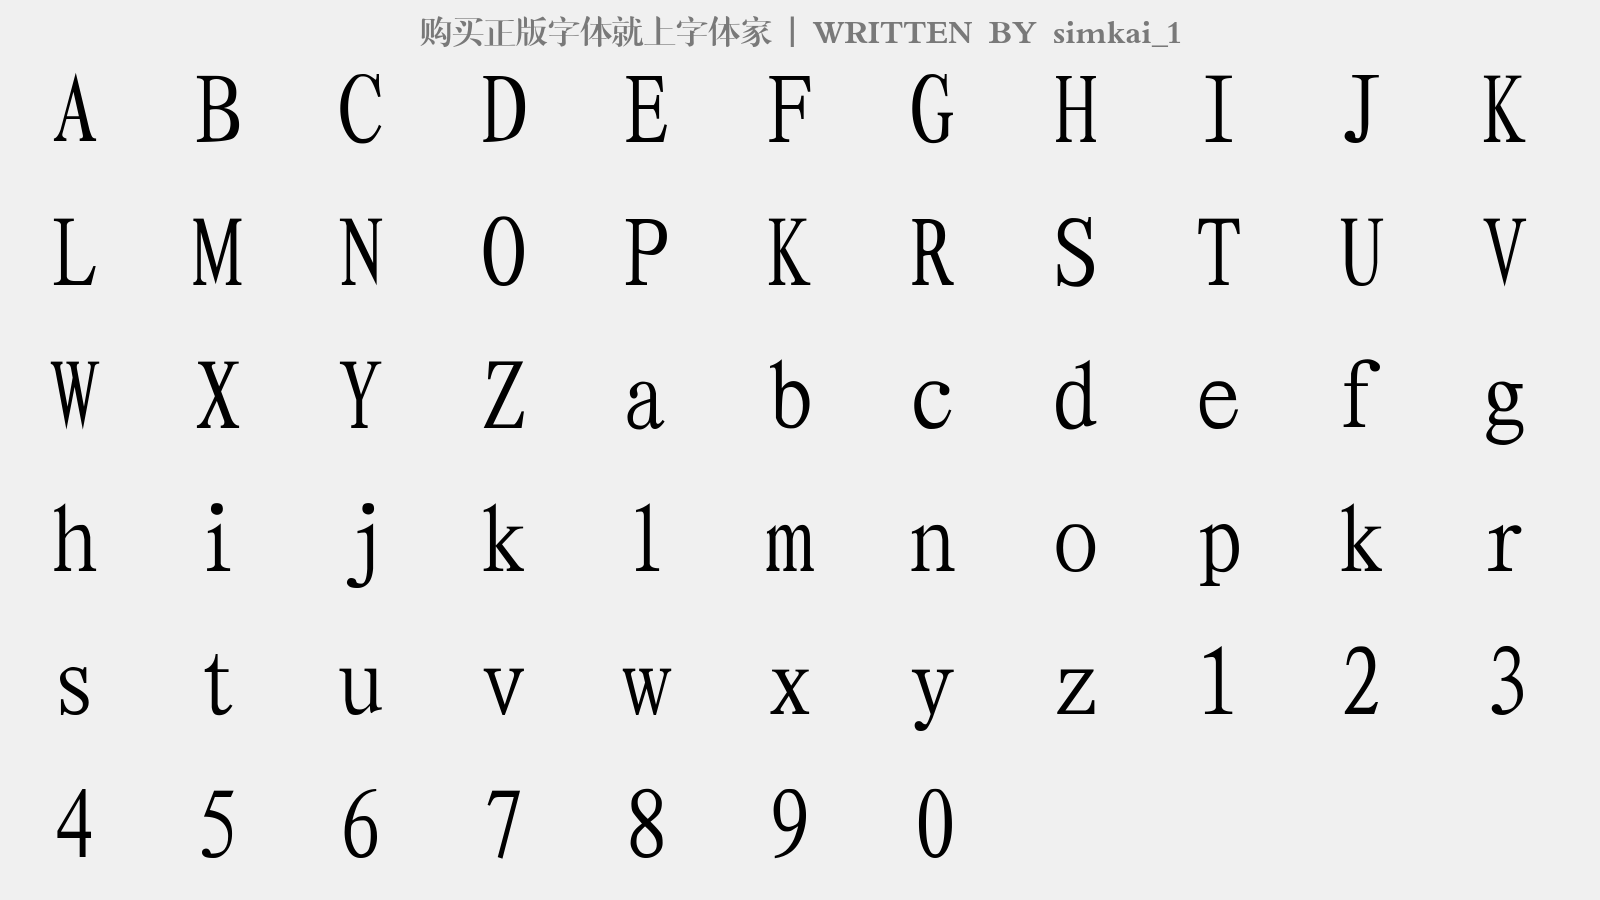 simkai_1 - 大写字母/小写字母/数字